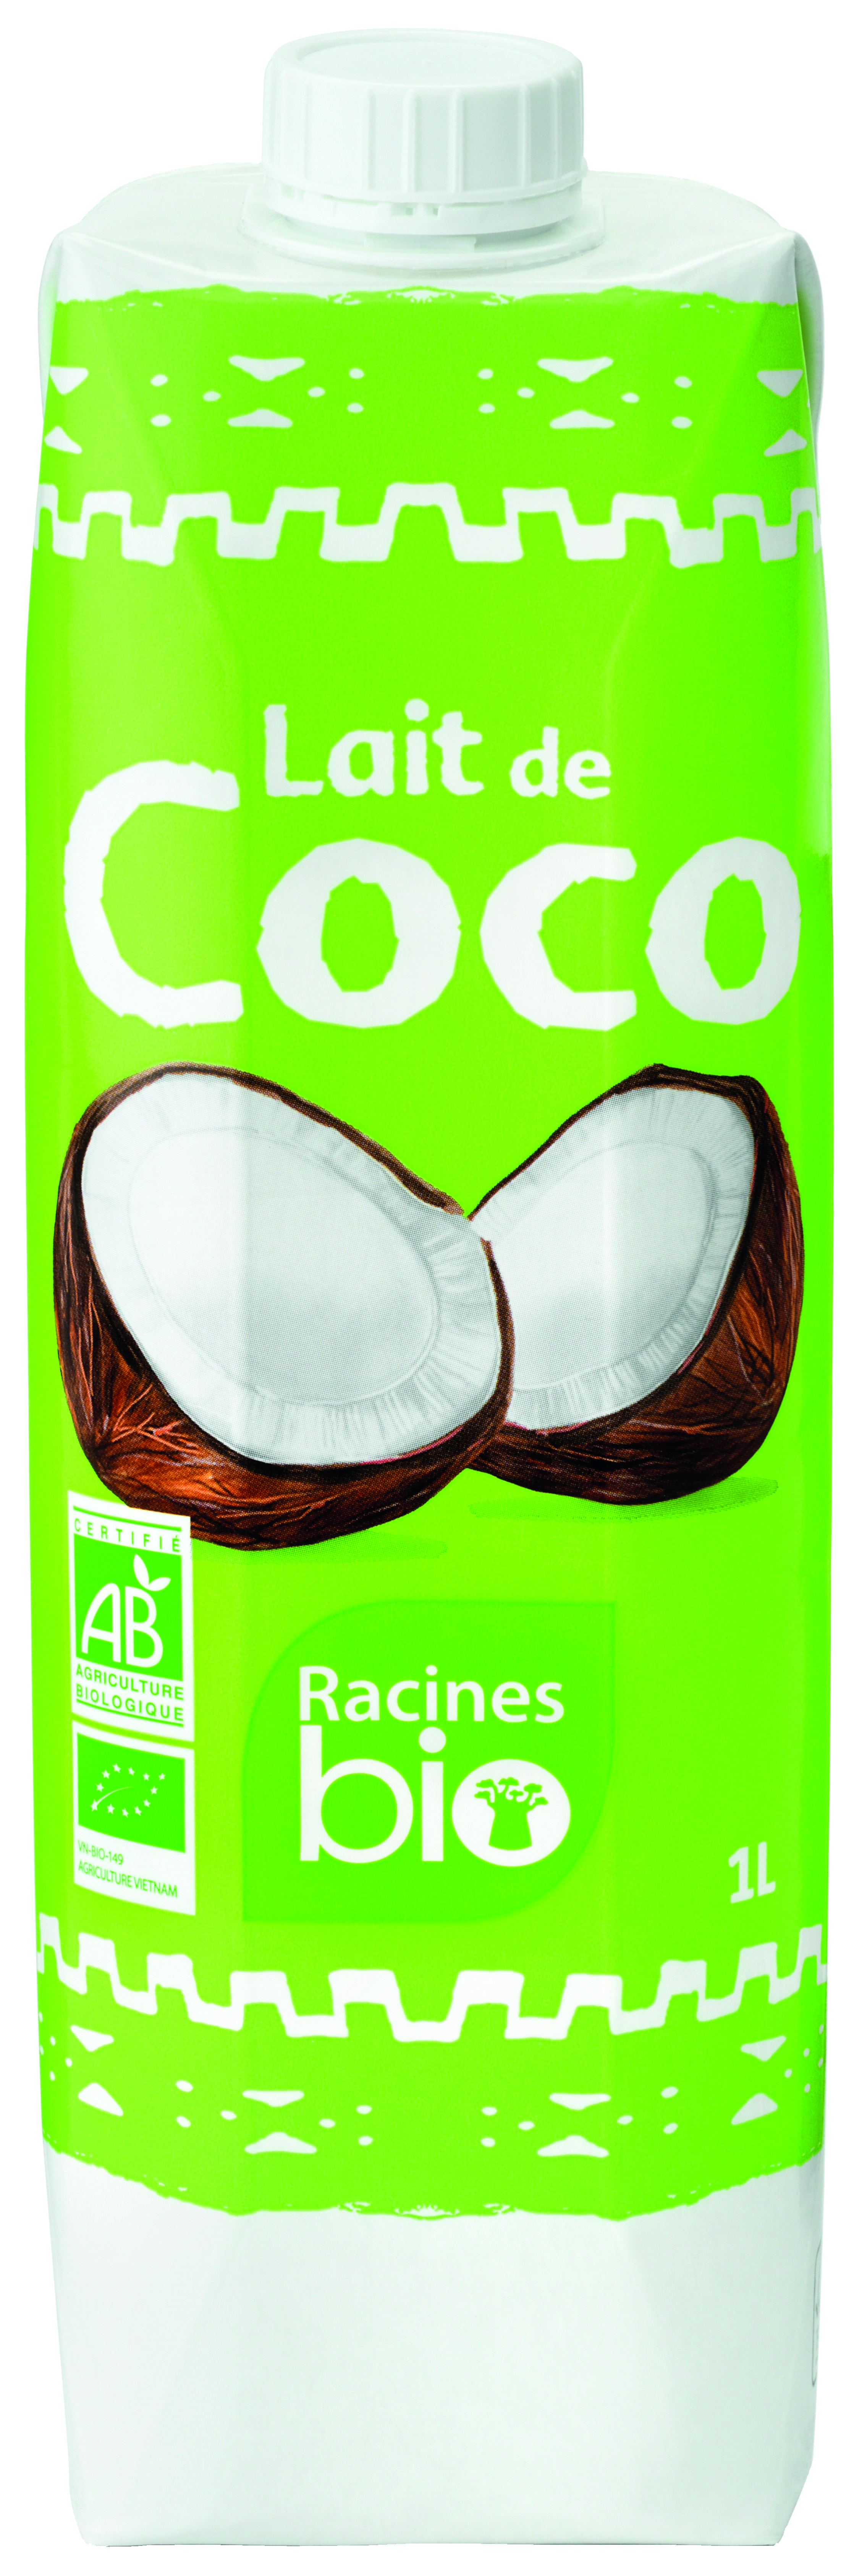 Lait De Coco 12 X 1 L - RACINES Bio